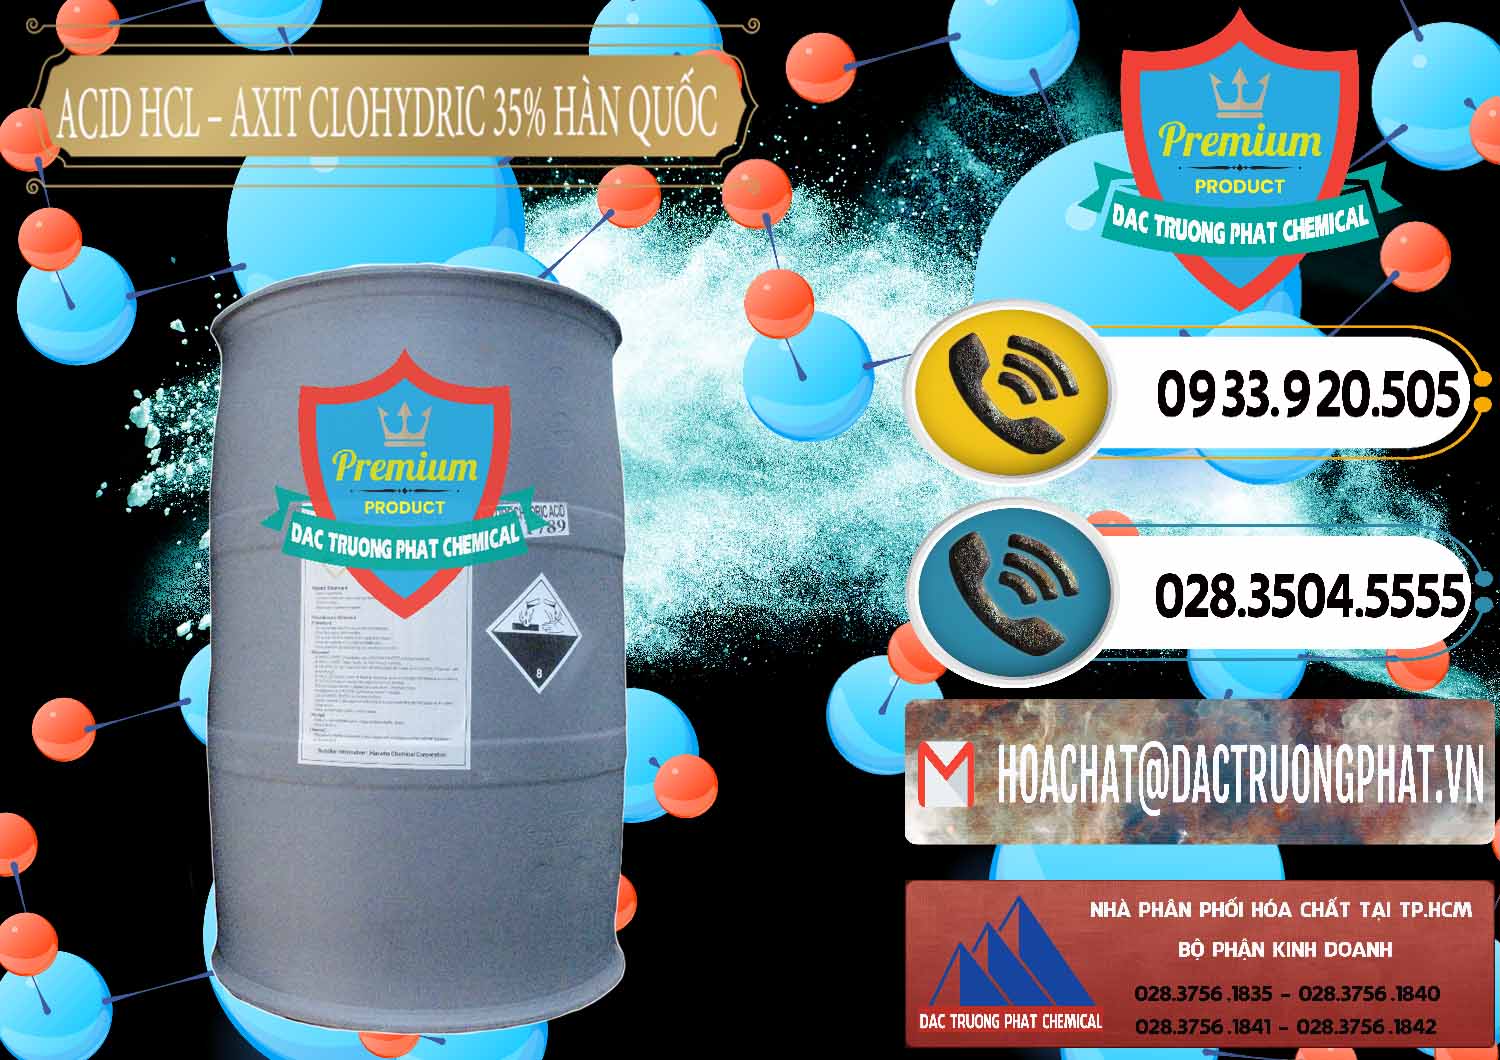 Công ty chuyên bán ( cung cấp ) Acid HCL - Axit Cohidric 35% Hàn Quốc Korea - 0011 - Đơn vị chuyên phân phối & bán hóa chất tại TP.HCM - hoachatdetnhuom.vn